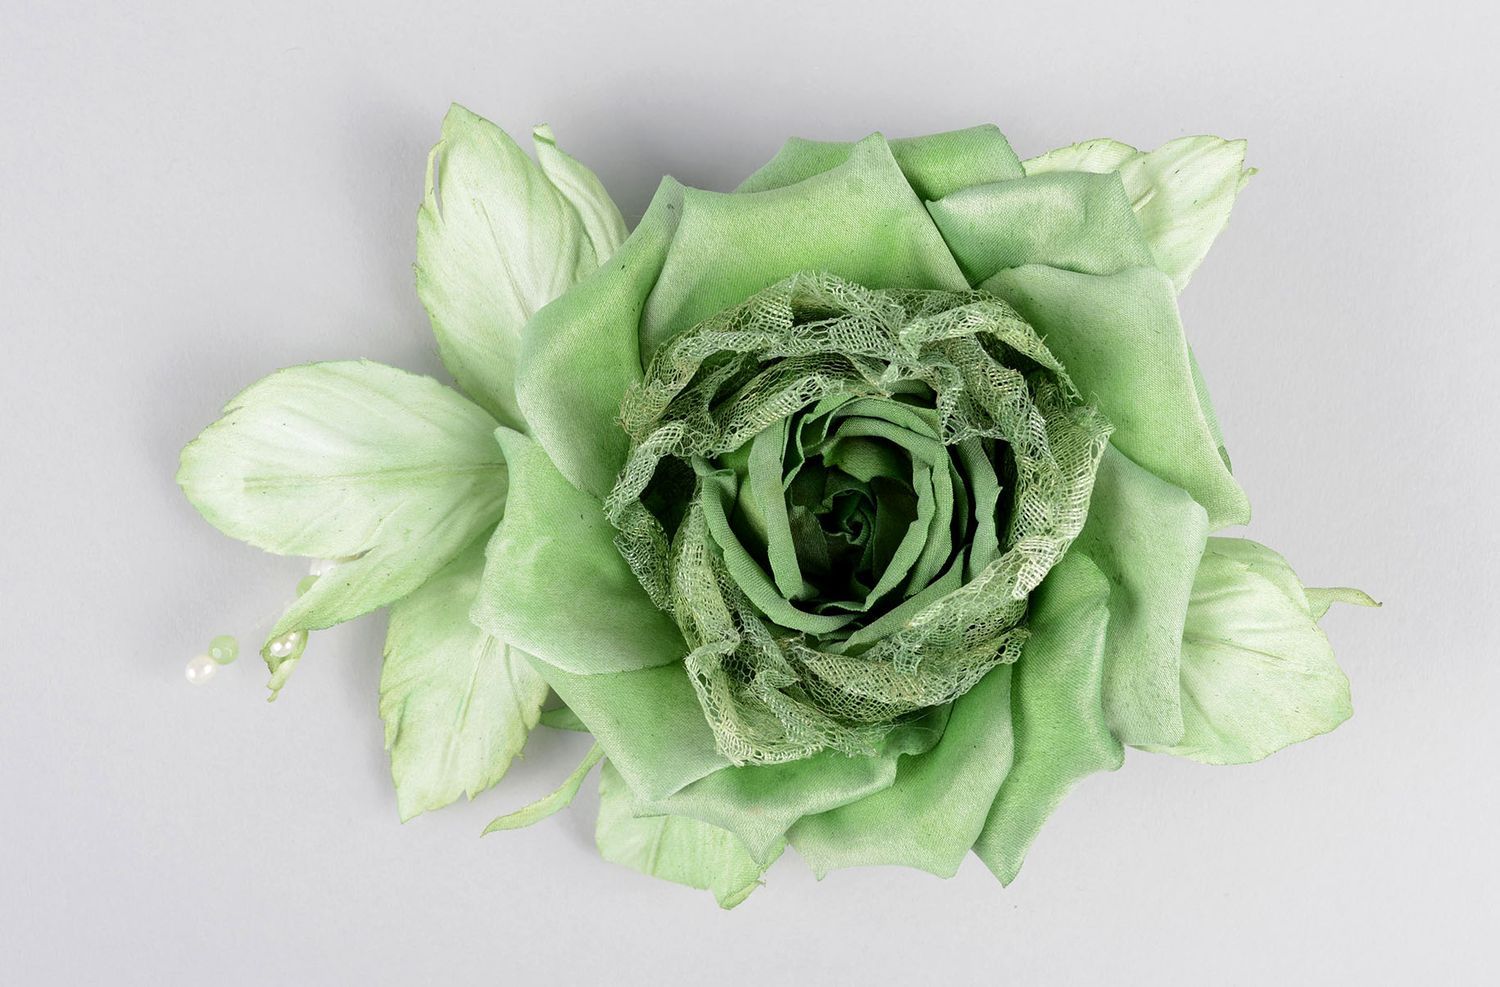 Брошь ручной работы зеленая брошь-цветок авторское дизайнерское украшение фото 2